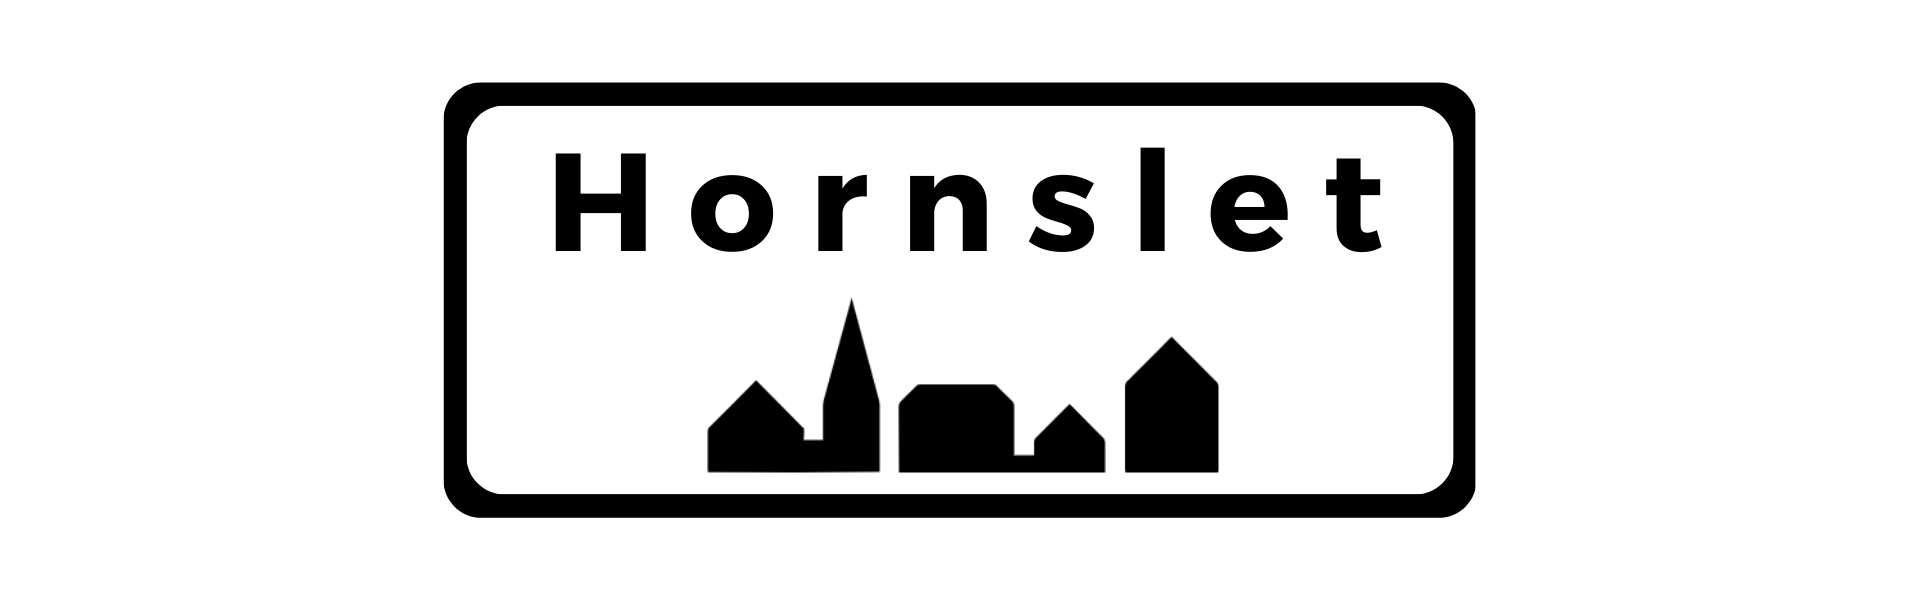 Beskrivelse af byen Honrslet